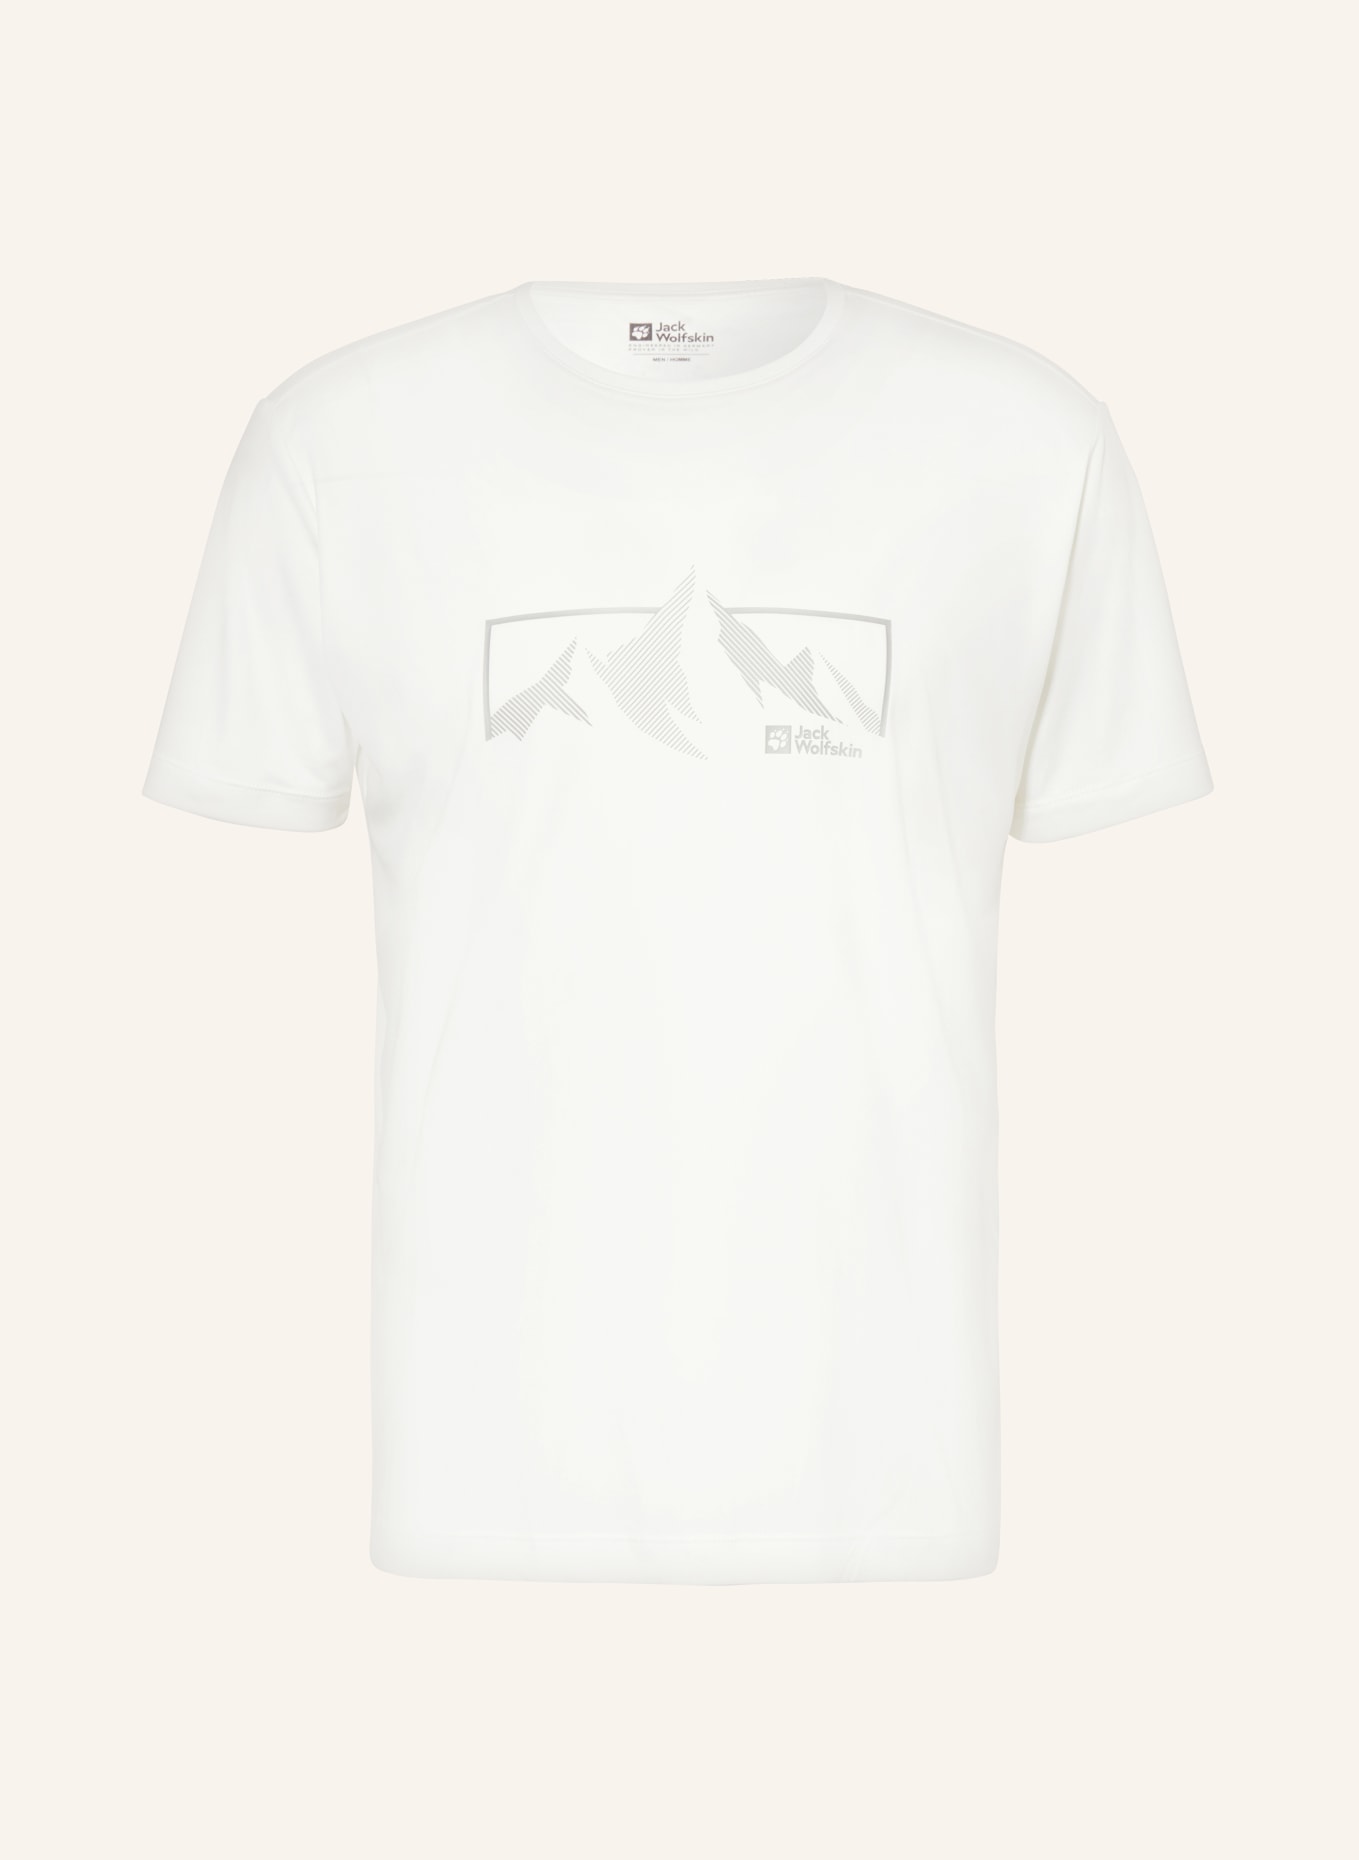 Jack Wolfskin T-Shirt PEAK GRAPHIC, Farbe: WEISS (Bild 1)